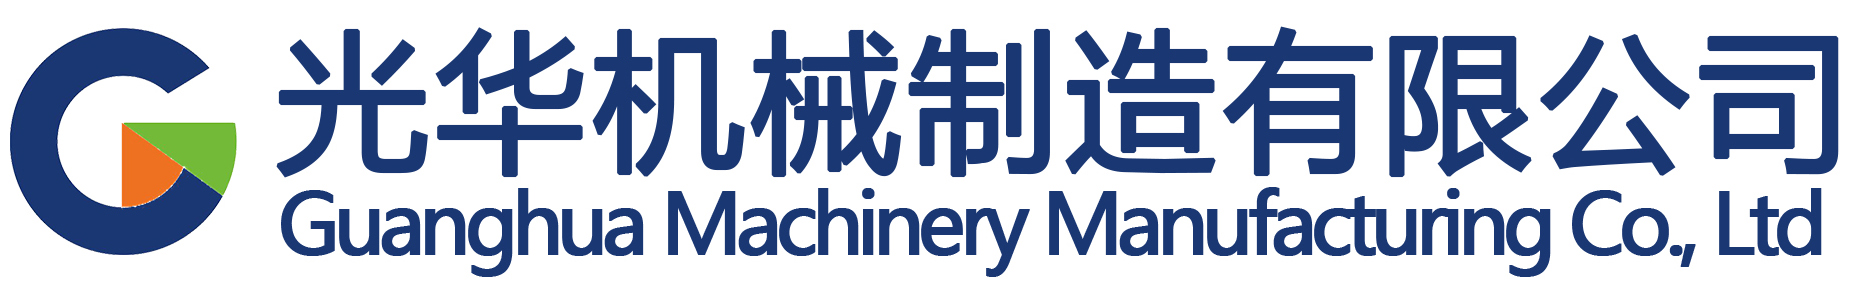 中国胶印机行业市场规模及未来发展趋势-公司新闻-光华机械智能门户网站